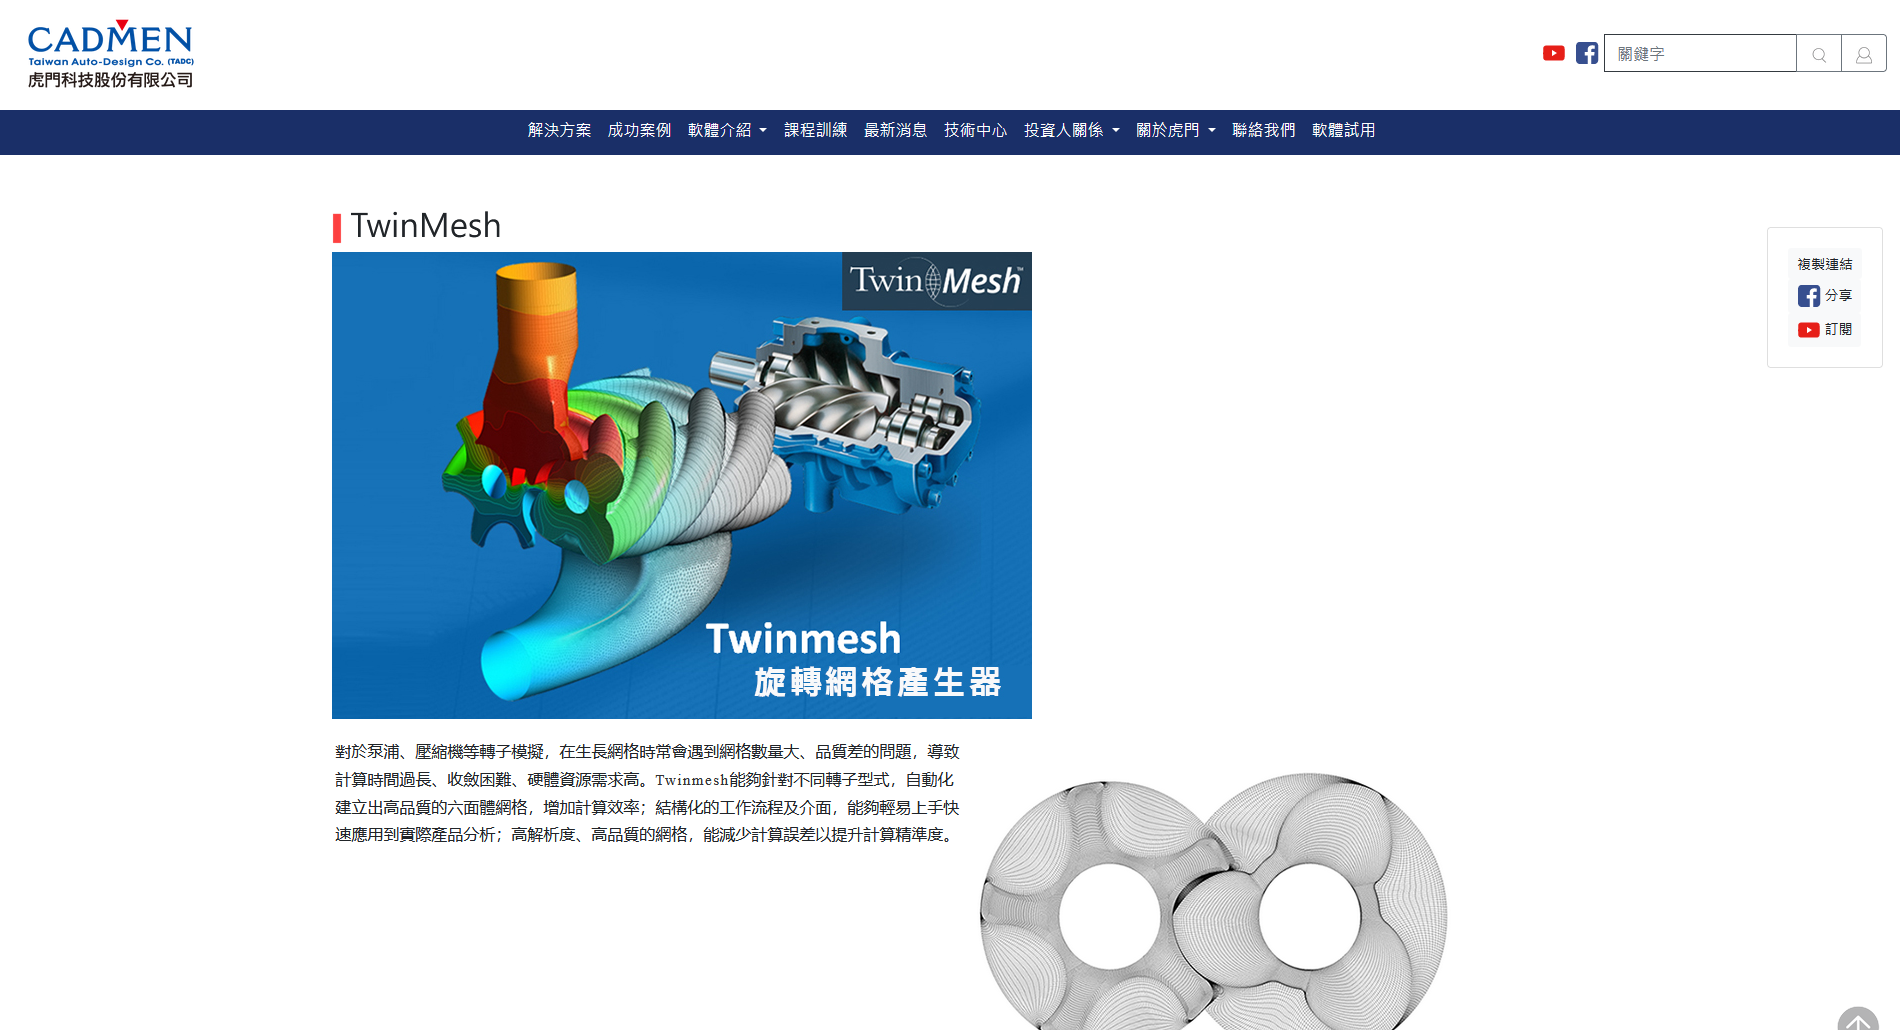 TwinMesh Worldwide Channel Partners CADMEN Taiwan Auto-Design Co.